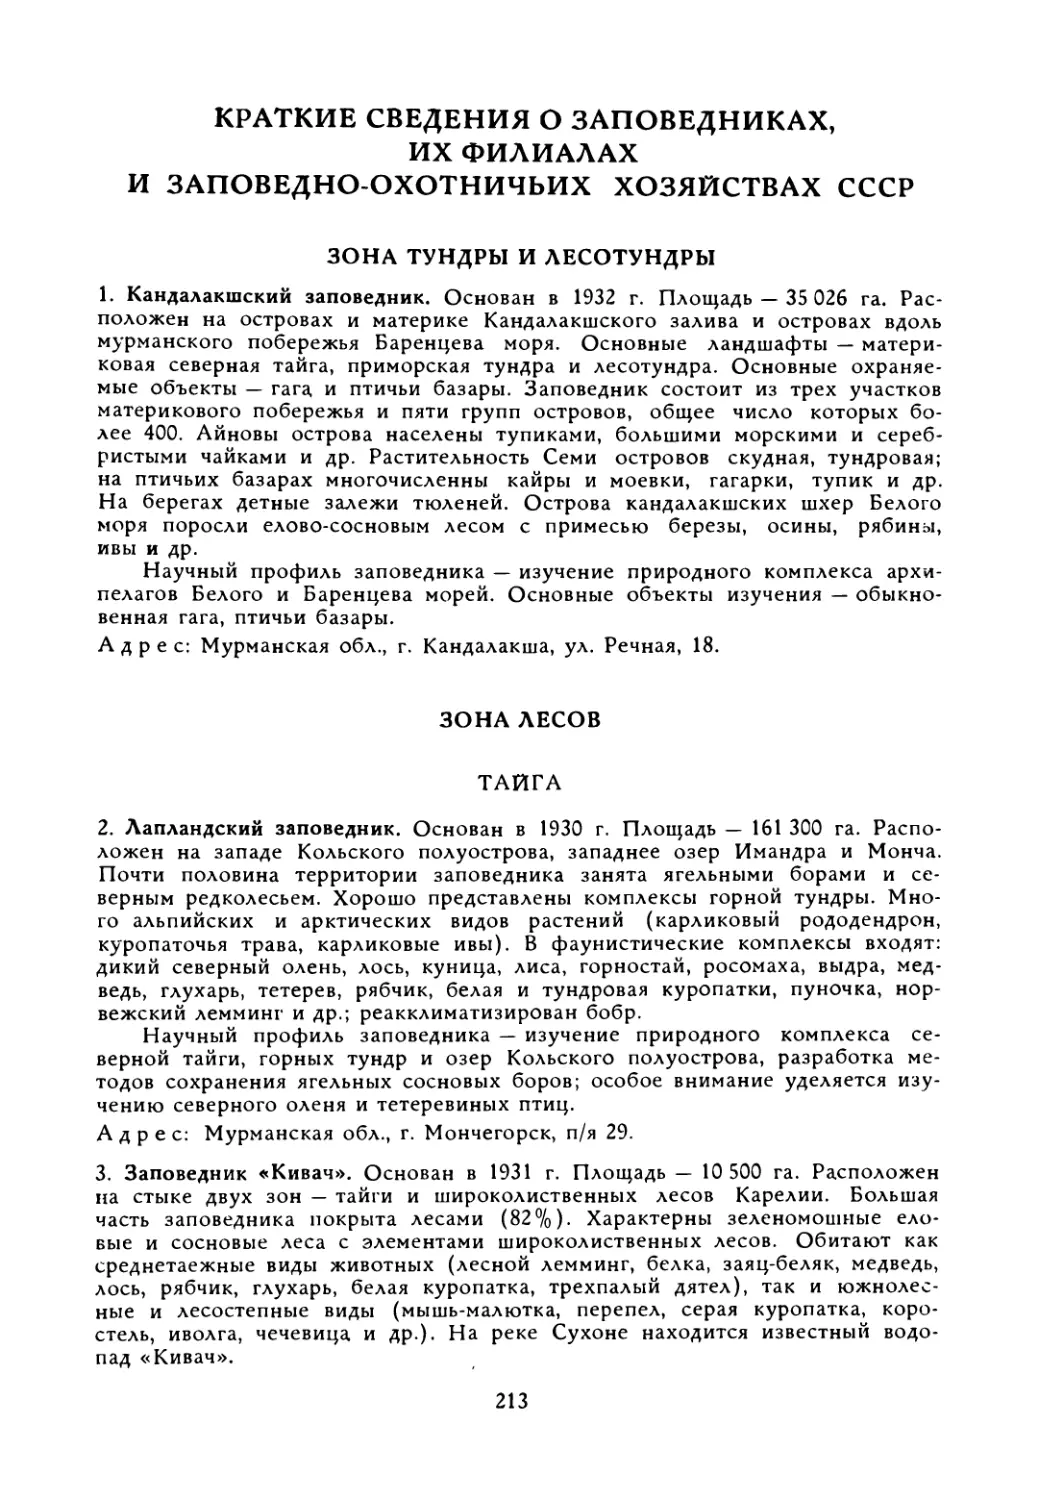 Краткие сведения о заповедниках, их филиалах и заповедно-охотничьих хозяйствах СССР